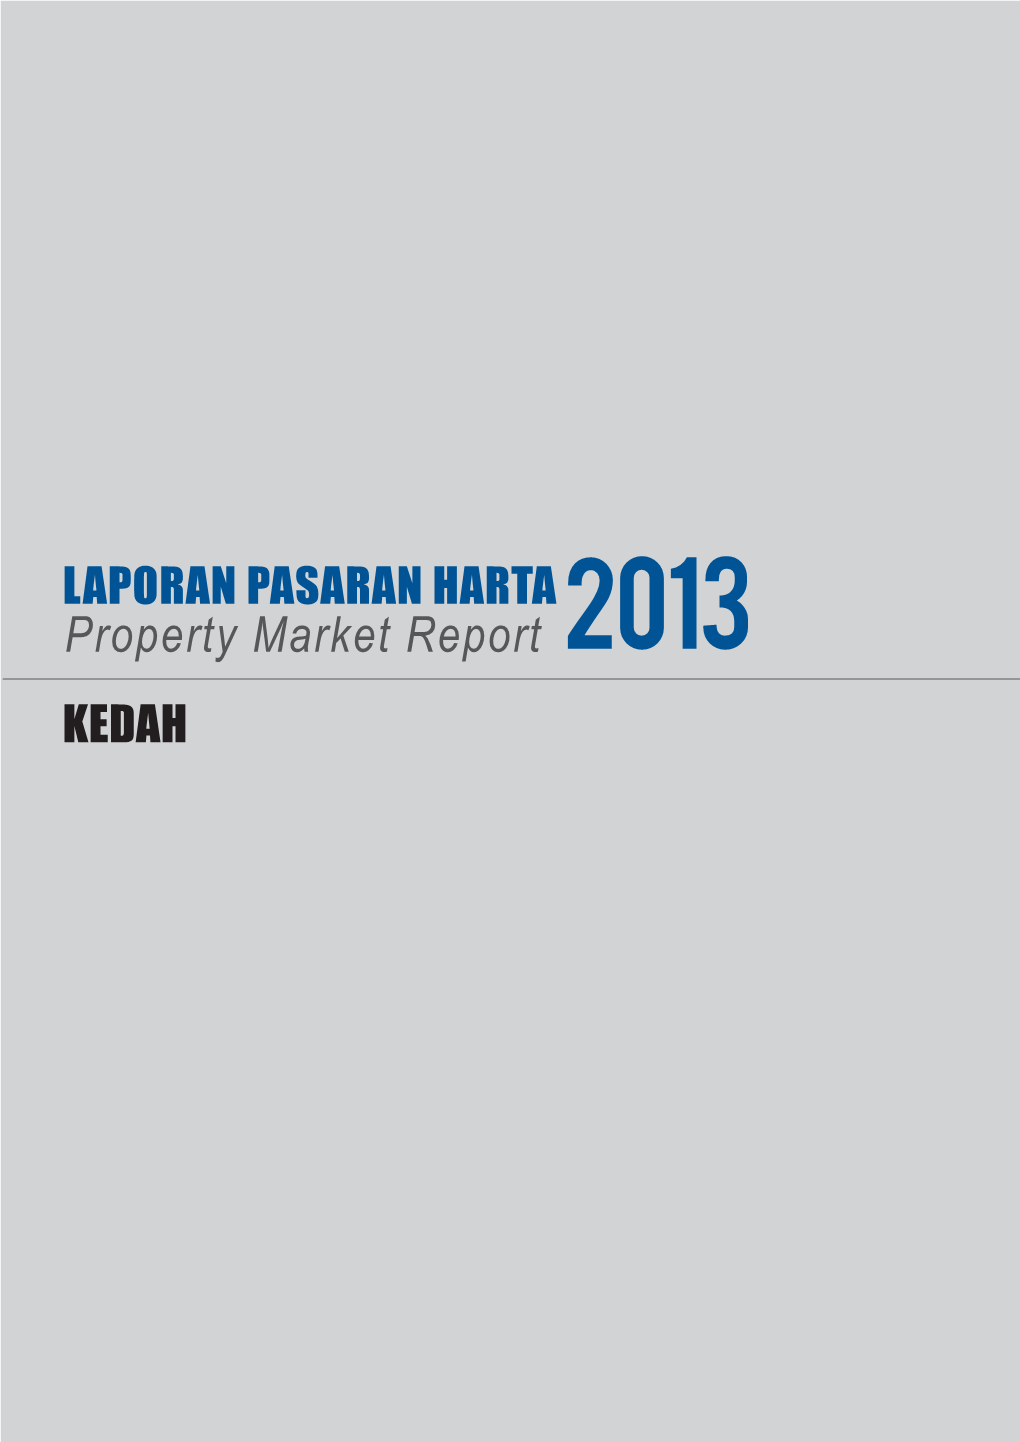 Property Market Report 2013 KEDAH 10 KEDAH DARUL AMAN